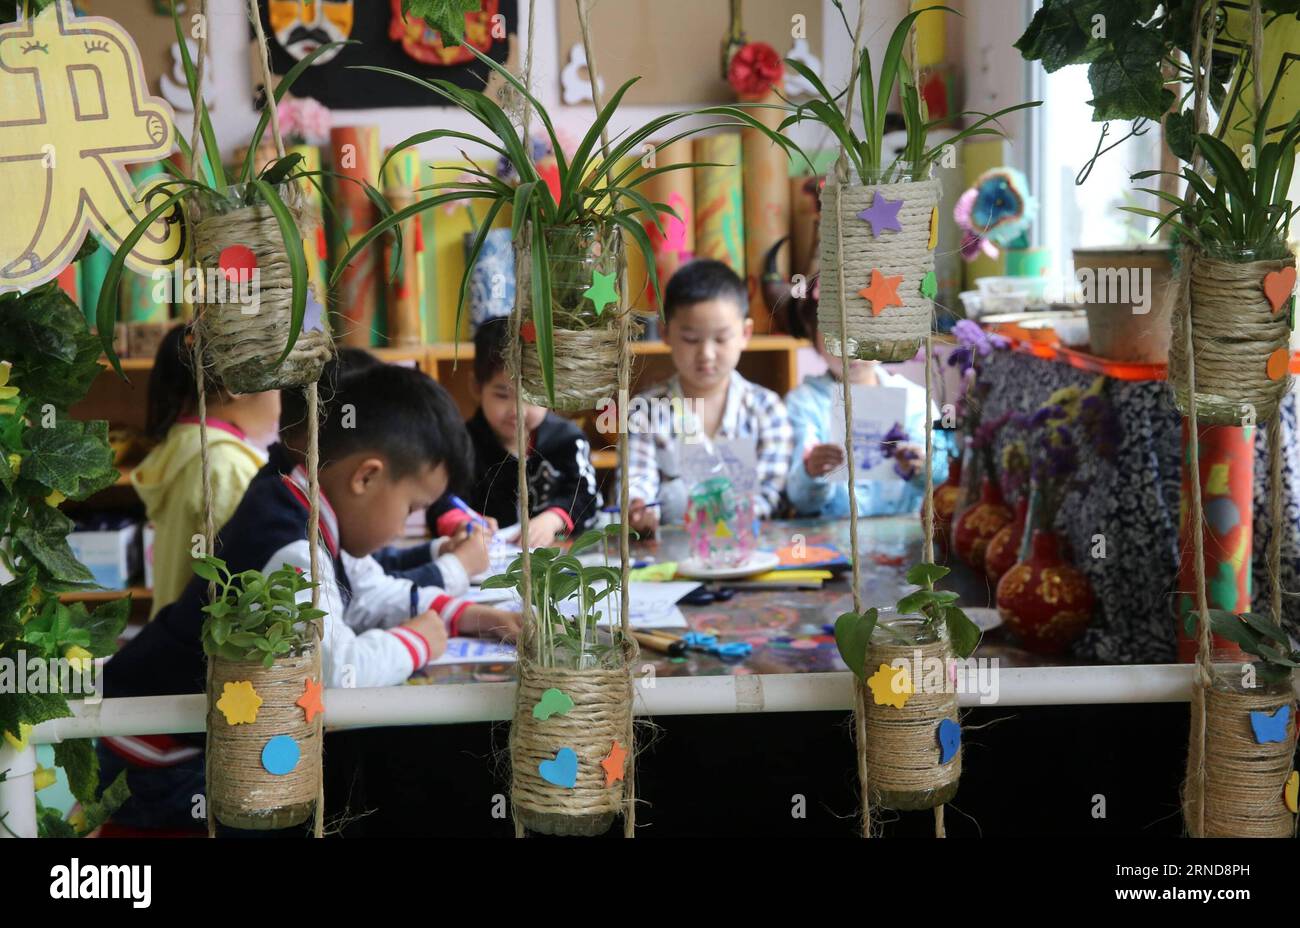 XIANGYANG, le 09 mai 2016 -- des enfants étudient derrière le coin de plantation dans une salle de classe de la maternelle expérimentale de Xiangyang à Xiangyang, dans la province du Hubei, au centre de la Chine, le 9 mai 2016. Le jardin d ' enfants de Xiangyang a installé des coins de plantation dans ses salles de classe à partir du trimestre de printemps en 2016, où les enfants peuvent avoir une expérience de plantation et observer la culture des plantes sous la direction de leur enseignant. (Zwx) CHINA-HUBEI-XIANGYANG-KINDERGARTEN-PLANTING CORNER(CN) WangxHu PUBLICATIONxNOTxINxCHN Xiang Yang Mai 09 2016 enfants étudier derrière le Planting Corner DANS une salle de classe de Xiang Yang Experime Banque D'Images